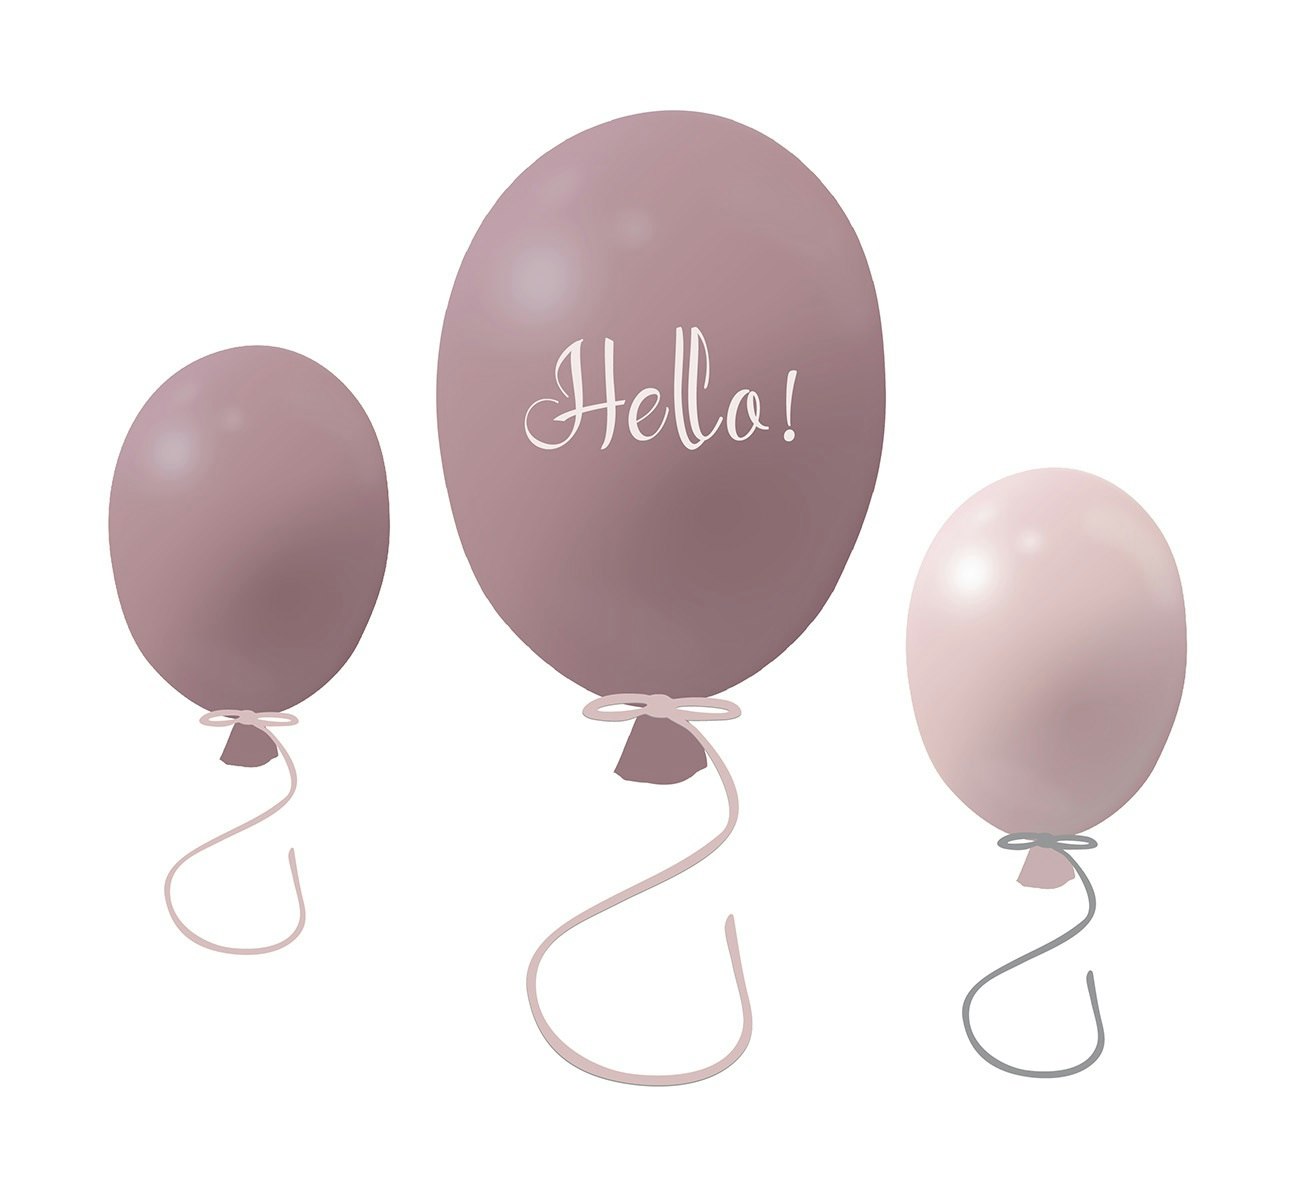 Väggklistermärke partyballonger 3-pack, dusty pink Väggklistermärke bestående av en stor rosa ballong med texten Hello och två mindre ballonger